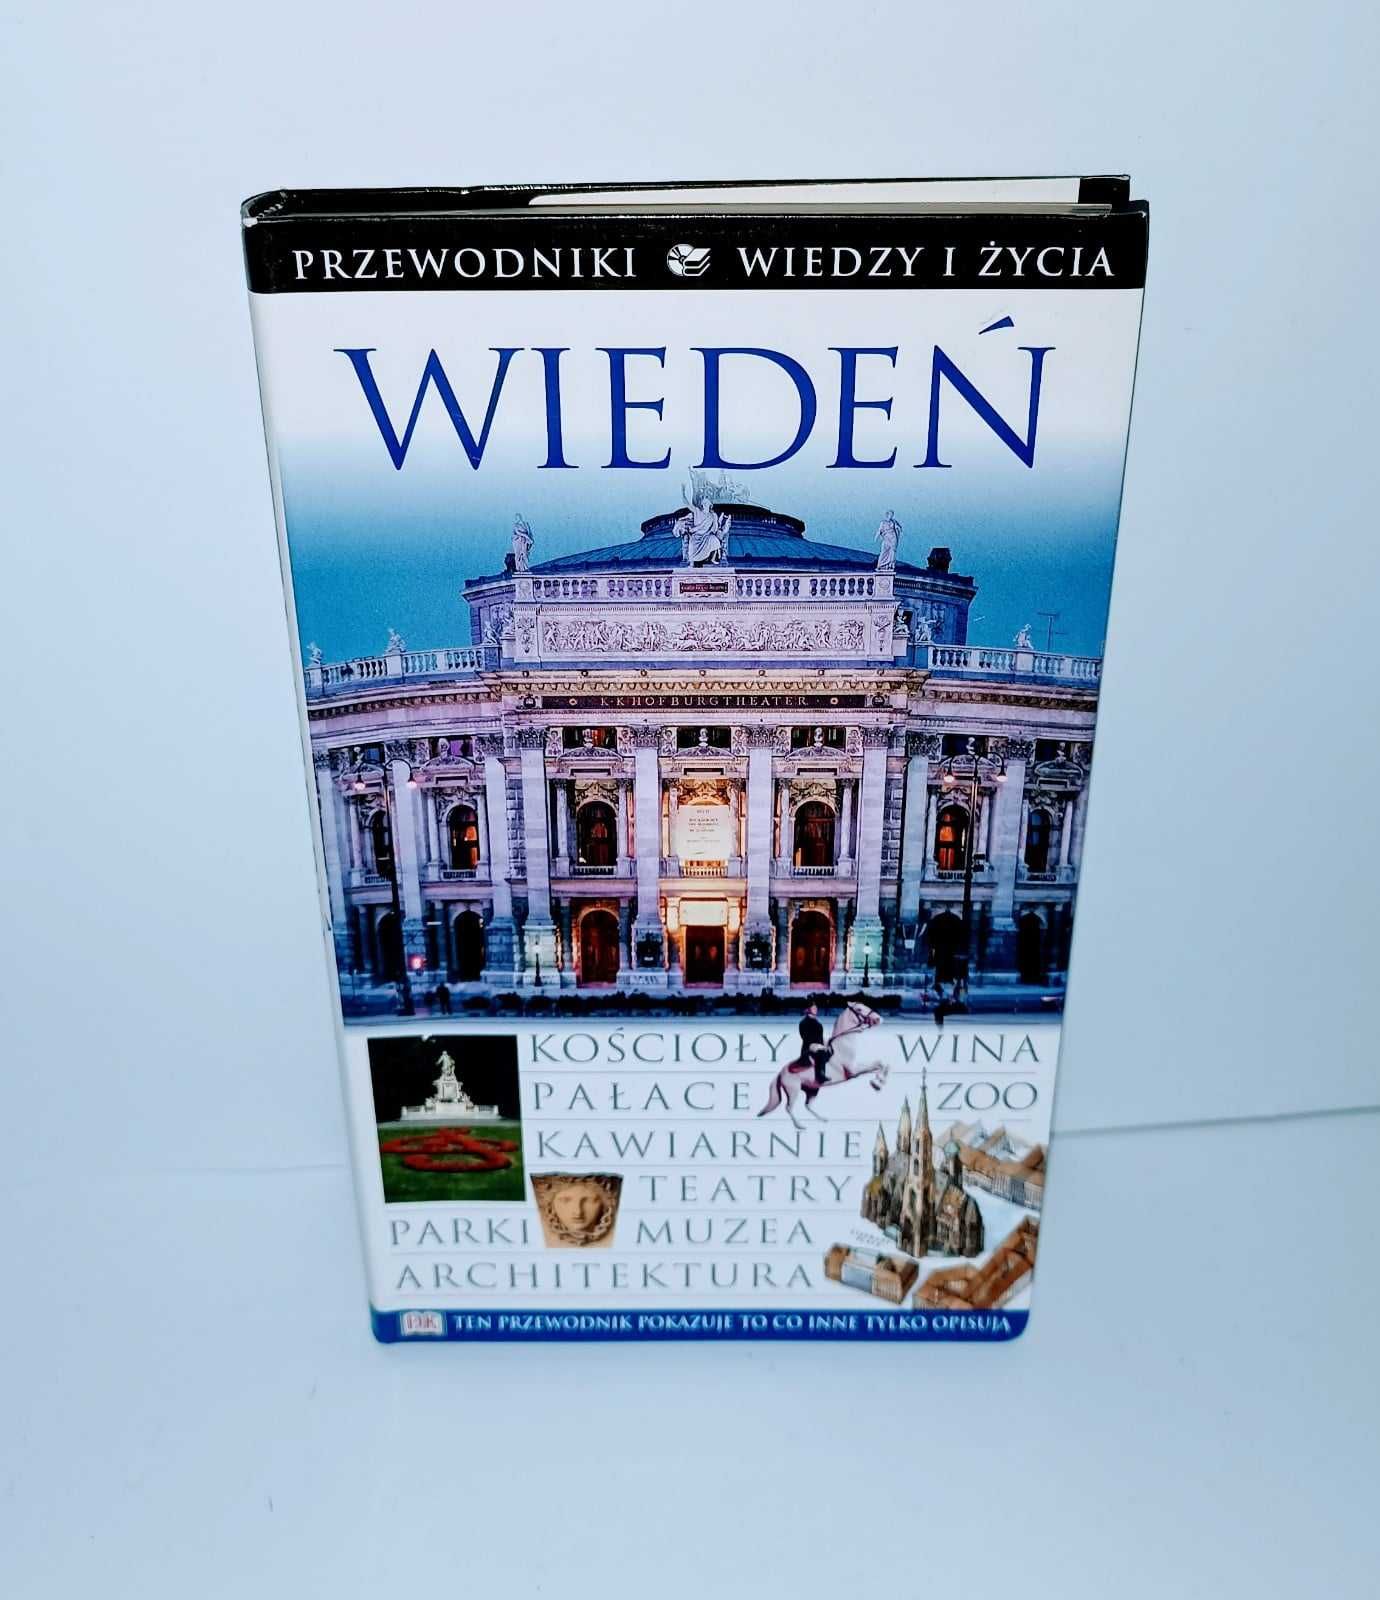 Wiedeń - Przewodnik wiedzy i życia UNIKAT